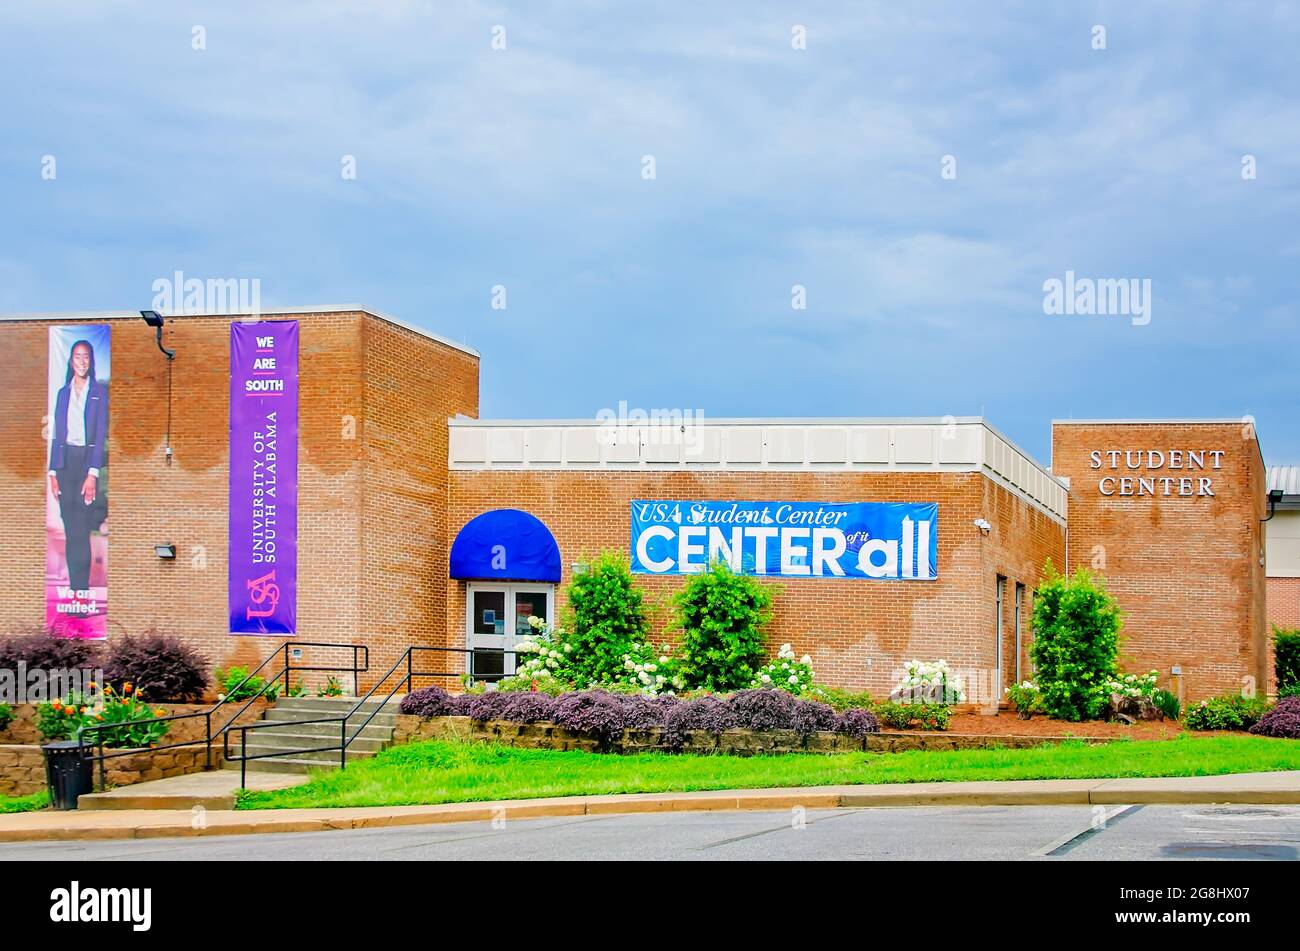 Das Studentenzentrum der University of South Alabama, 18. Juli 2021, in Mobile, Alabama. Die öffentliche Forschungsuniversität wurde 1963 gegründet. Stockfoto